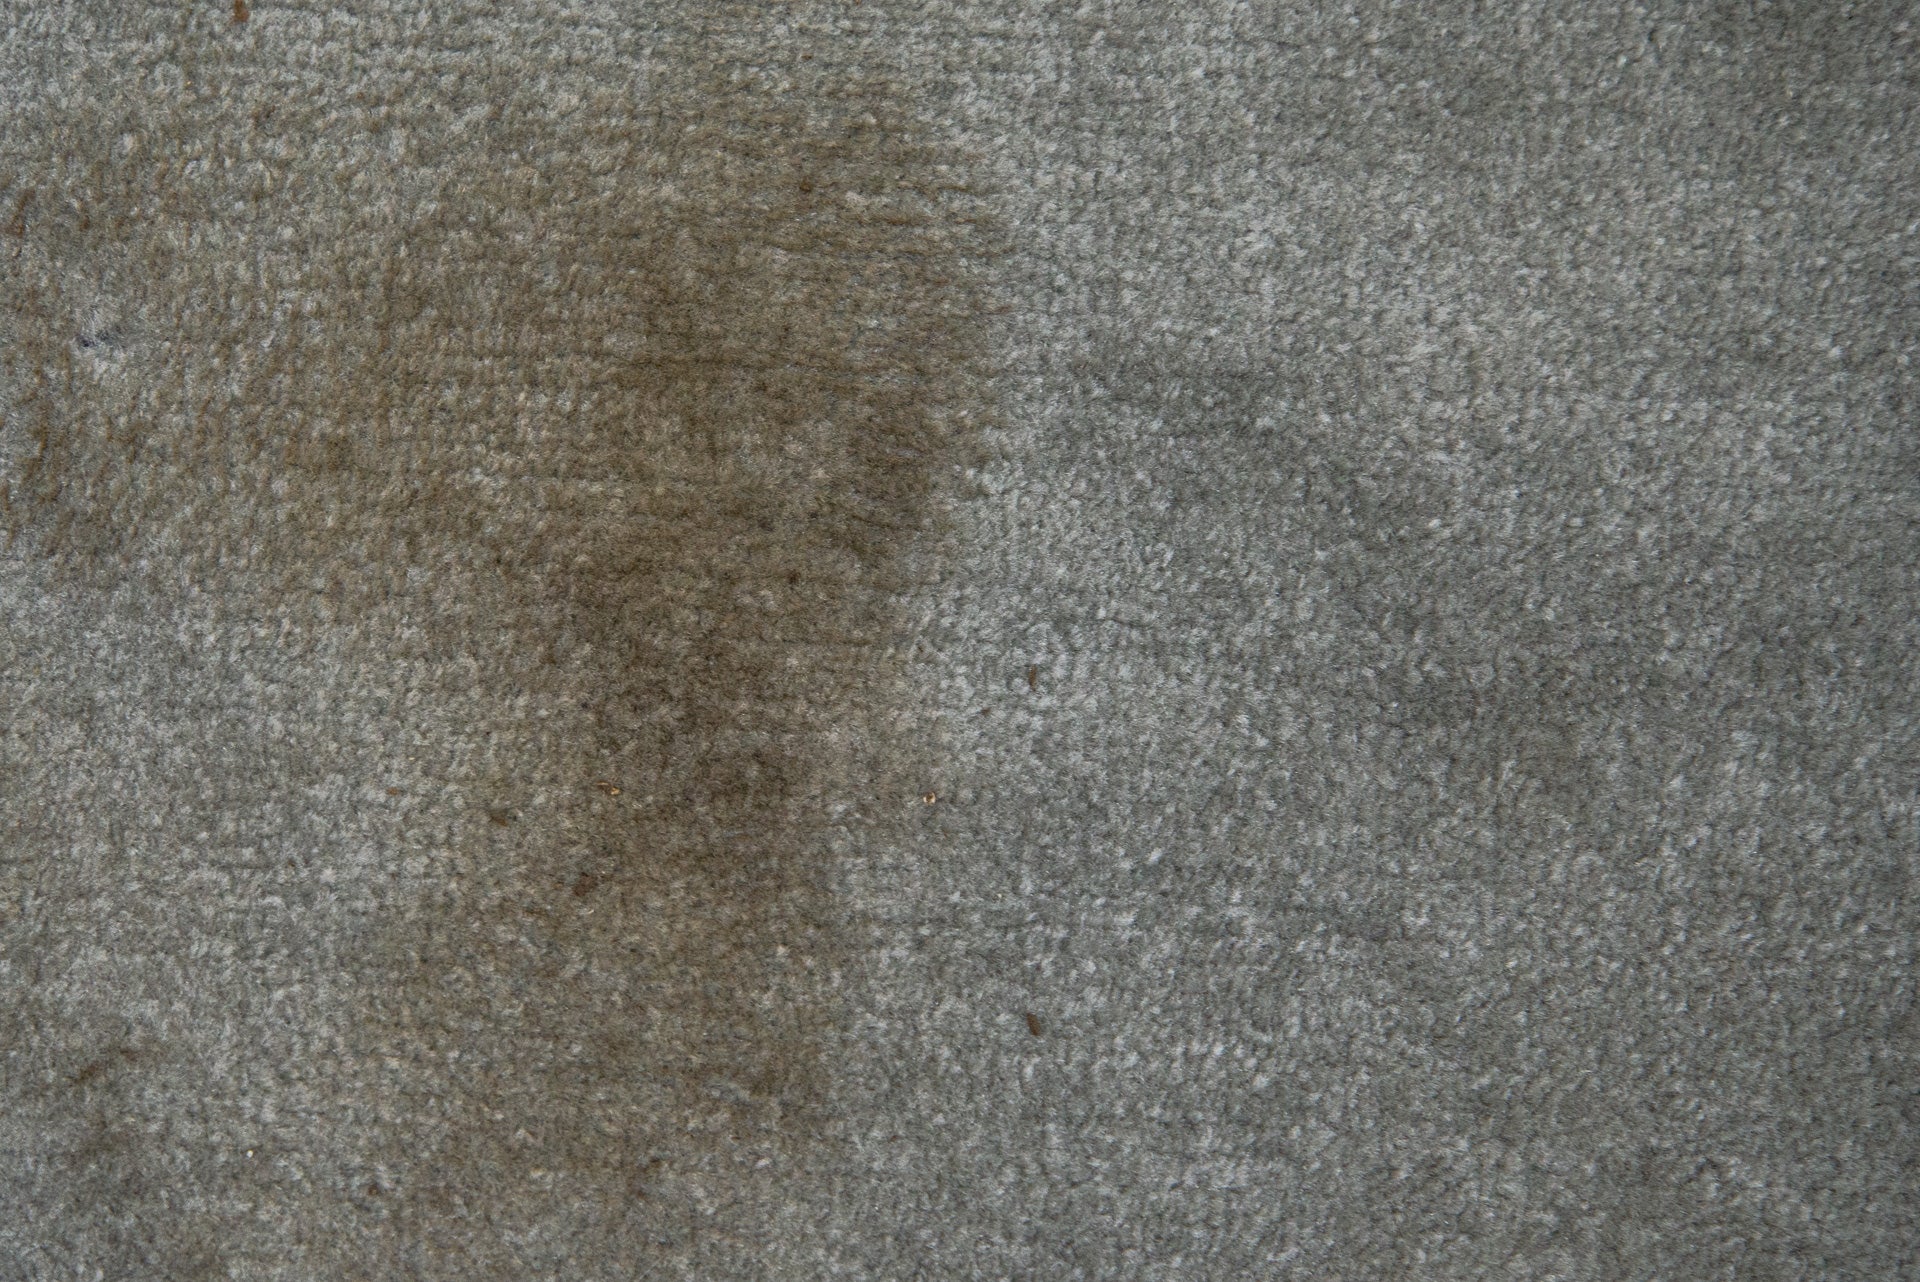 Una mancha de barro en una alfombra